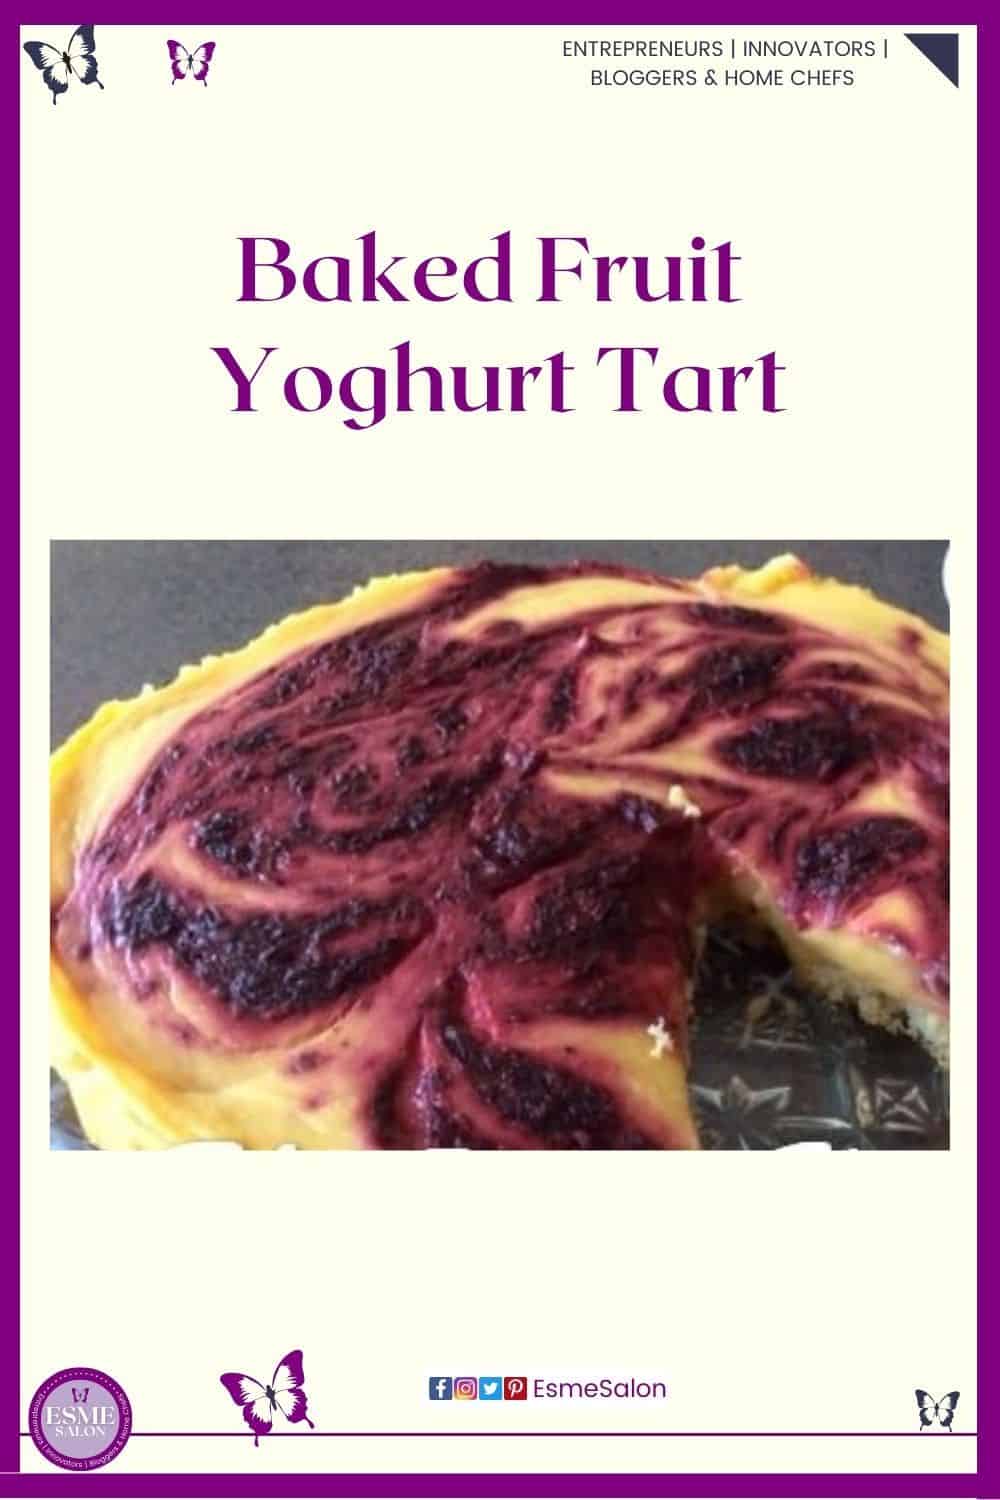 an image of a Gluten-free crust Baked Fruit Yoghurt Tart